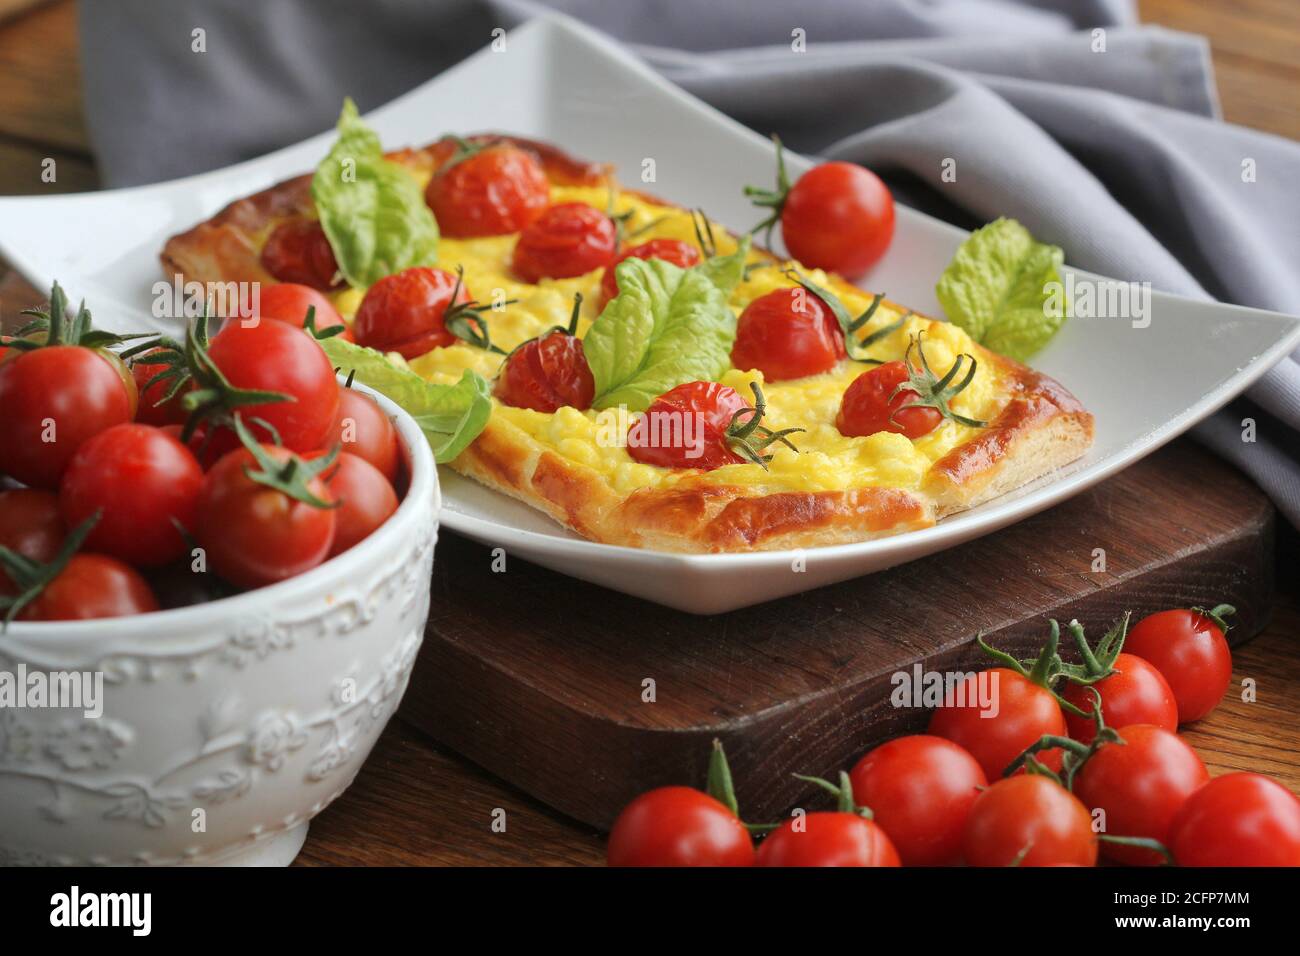 Crostata di pomodoro fresco, pasta sfoglia ricoperta di ricotta, formaggio e pomodori ciliegini Foto Stock